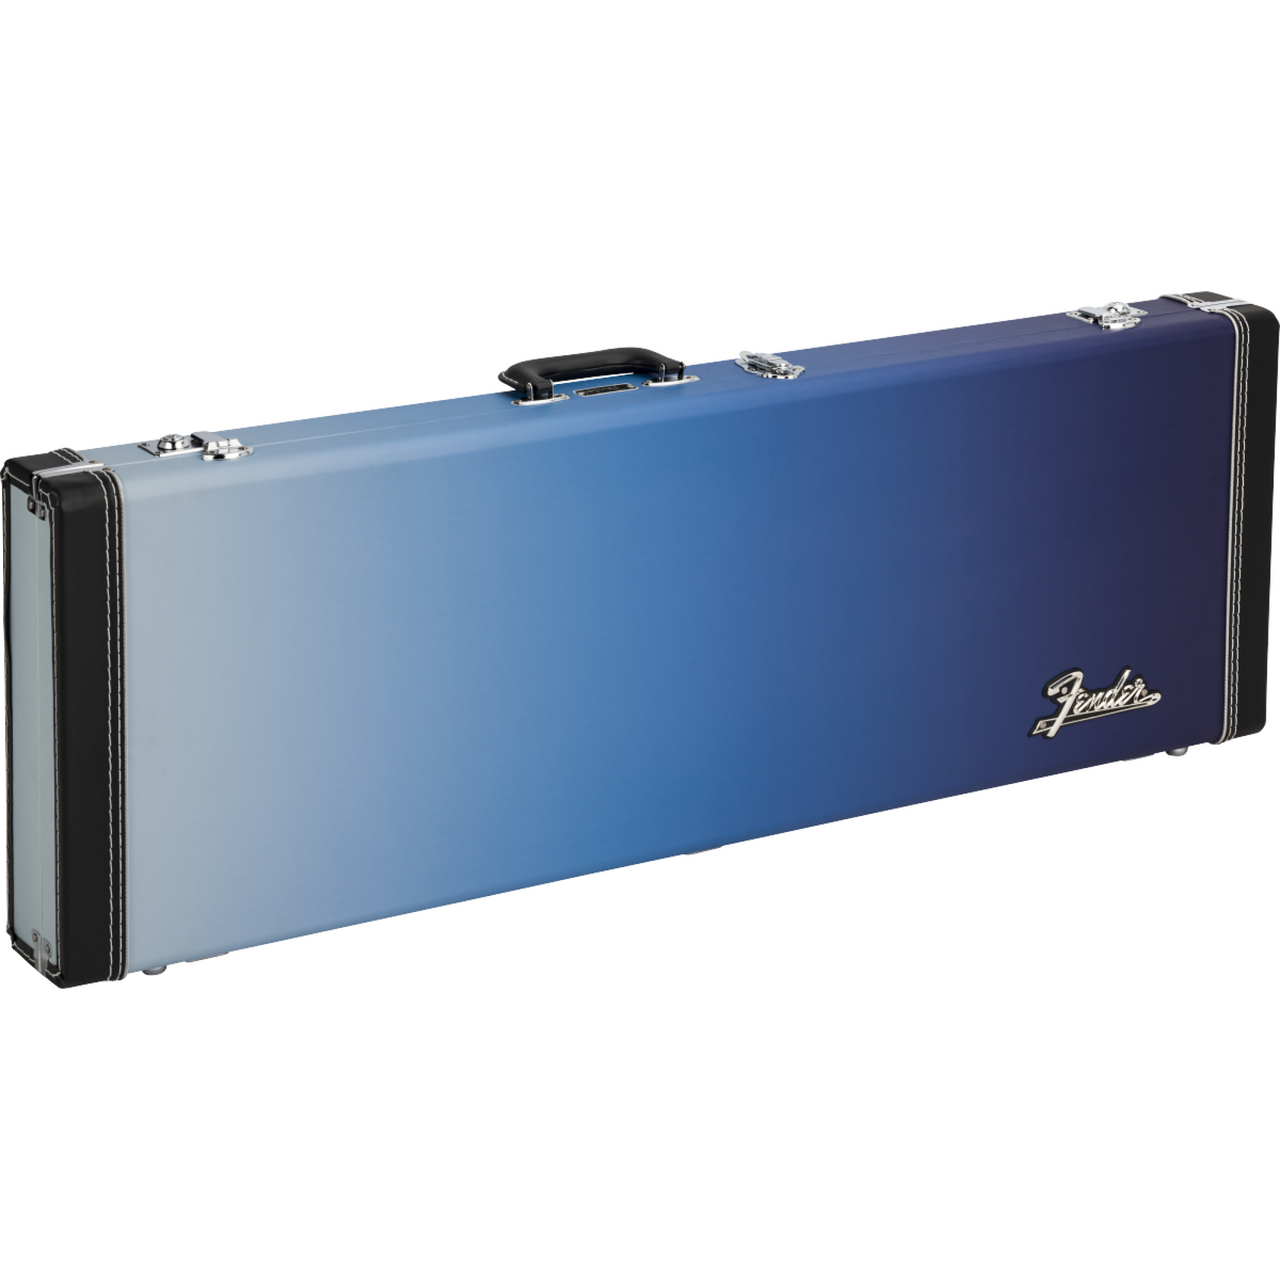 Estuche Fender Ombre Case Azul Belair Stratocaster Telecaster 0996106308